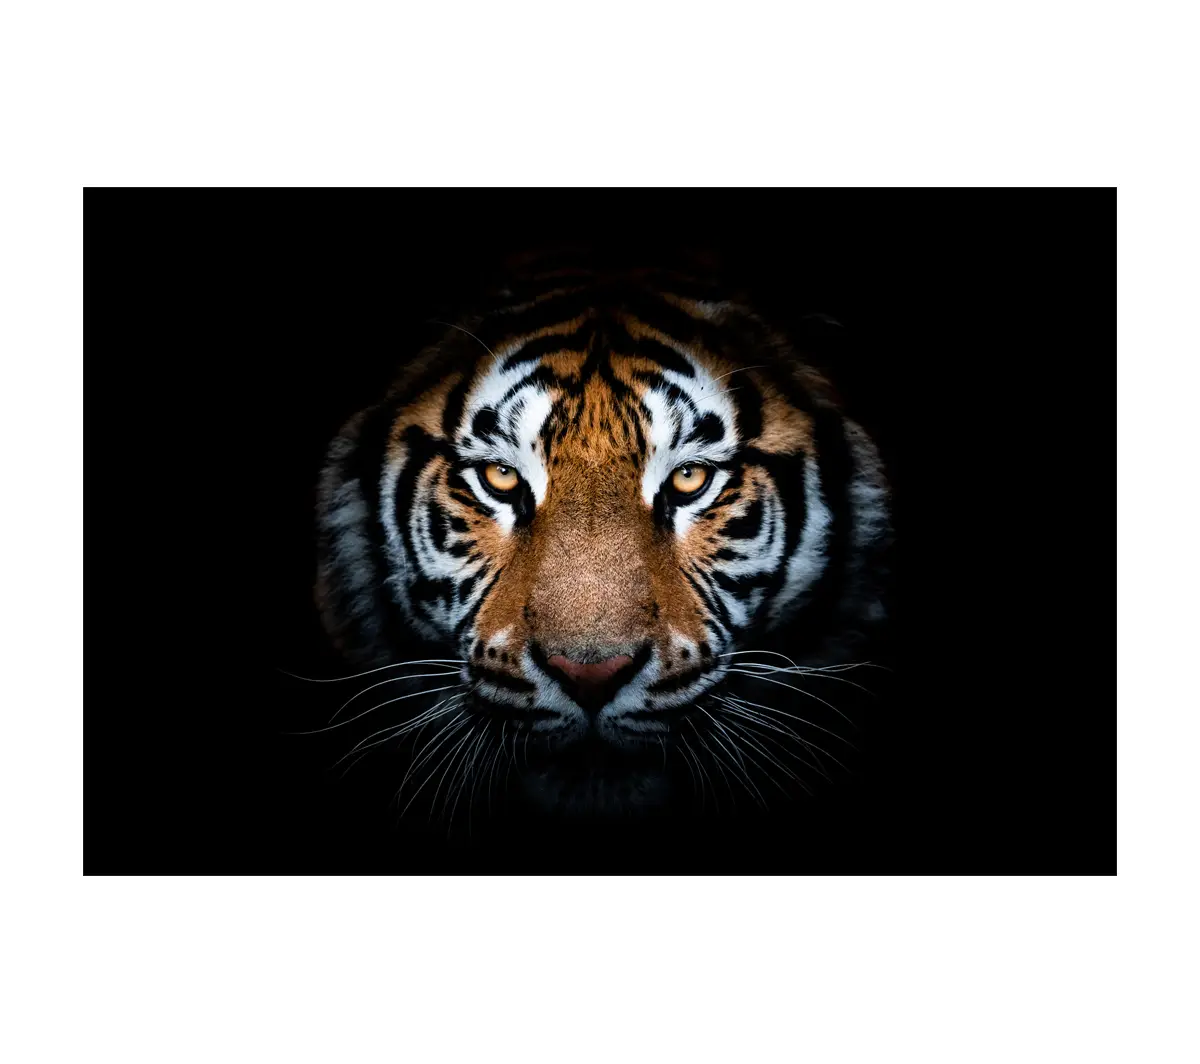 Leinwanddruck Tiger im dunklen Einteilig